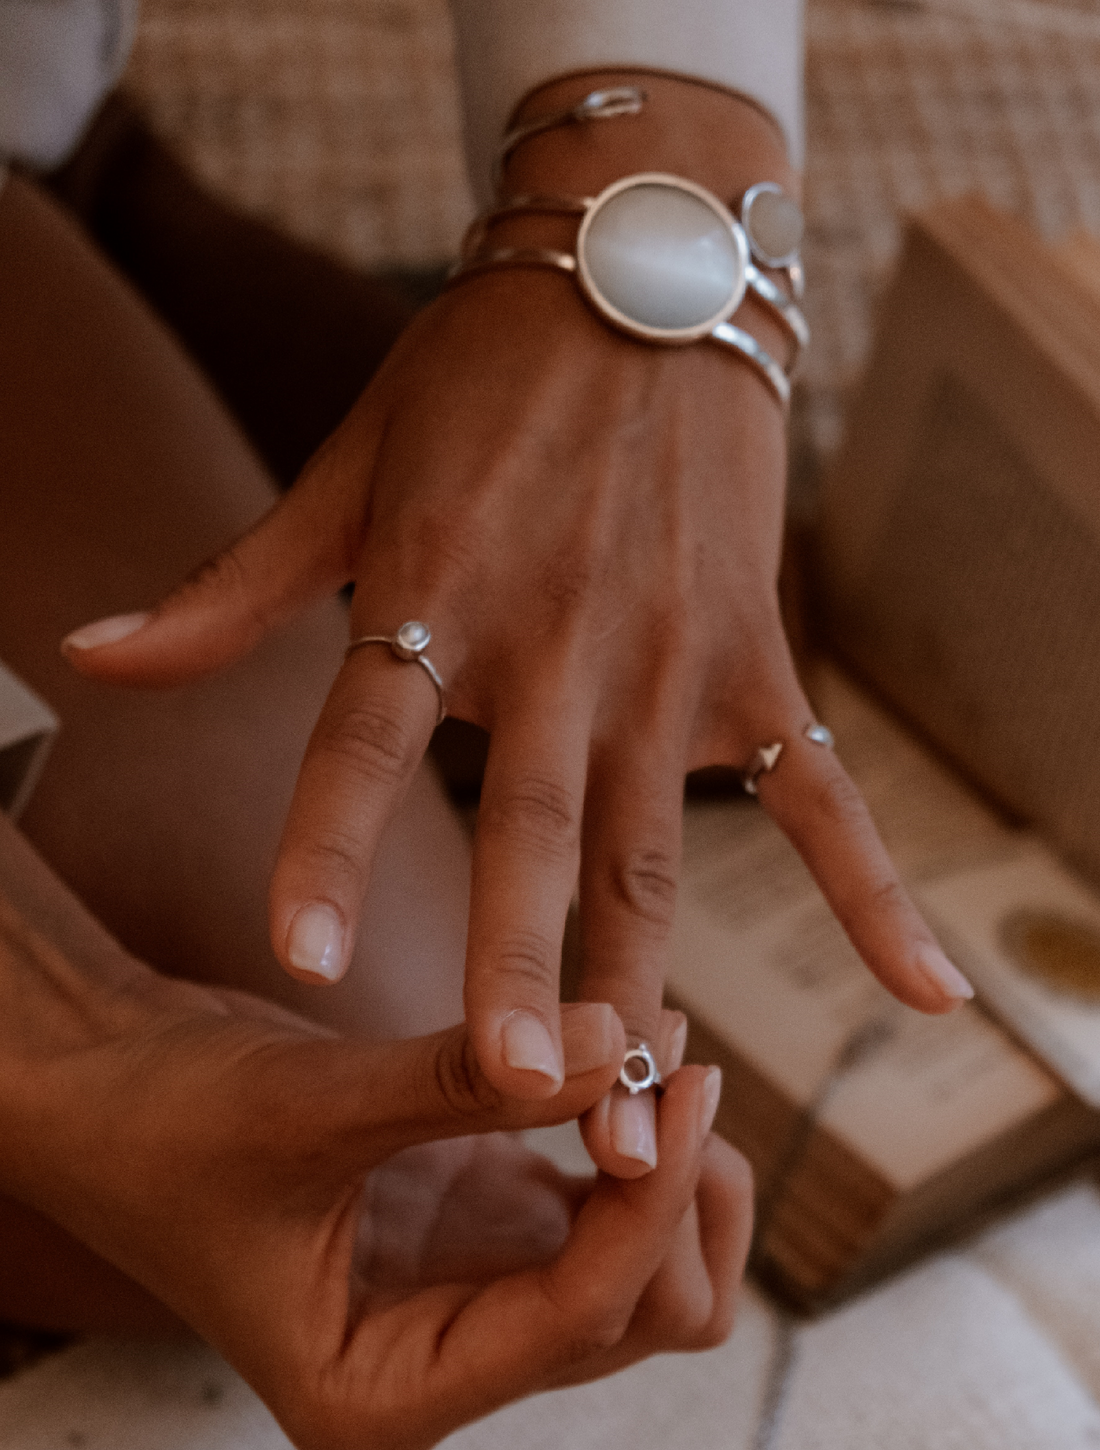 Significado de los anillos en los dedos para usar esta joya y resaltar tus manos dándole un significado